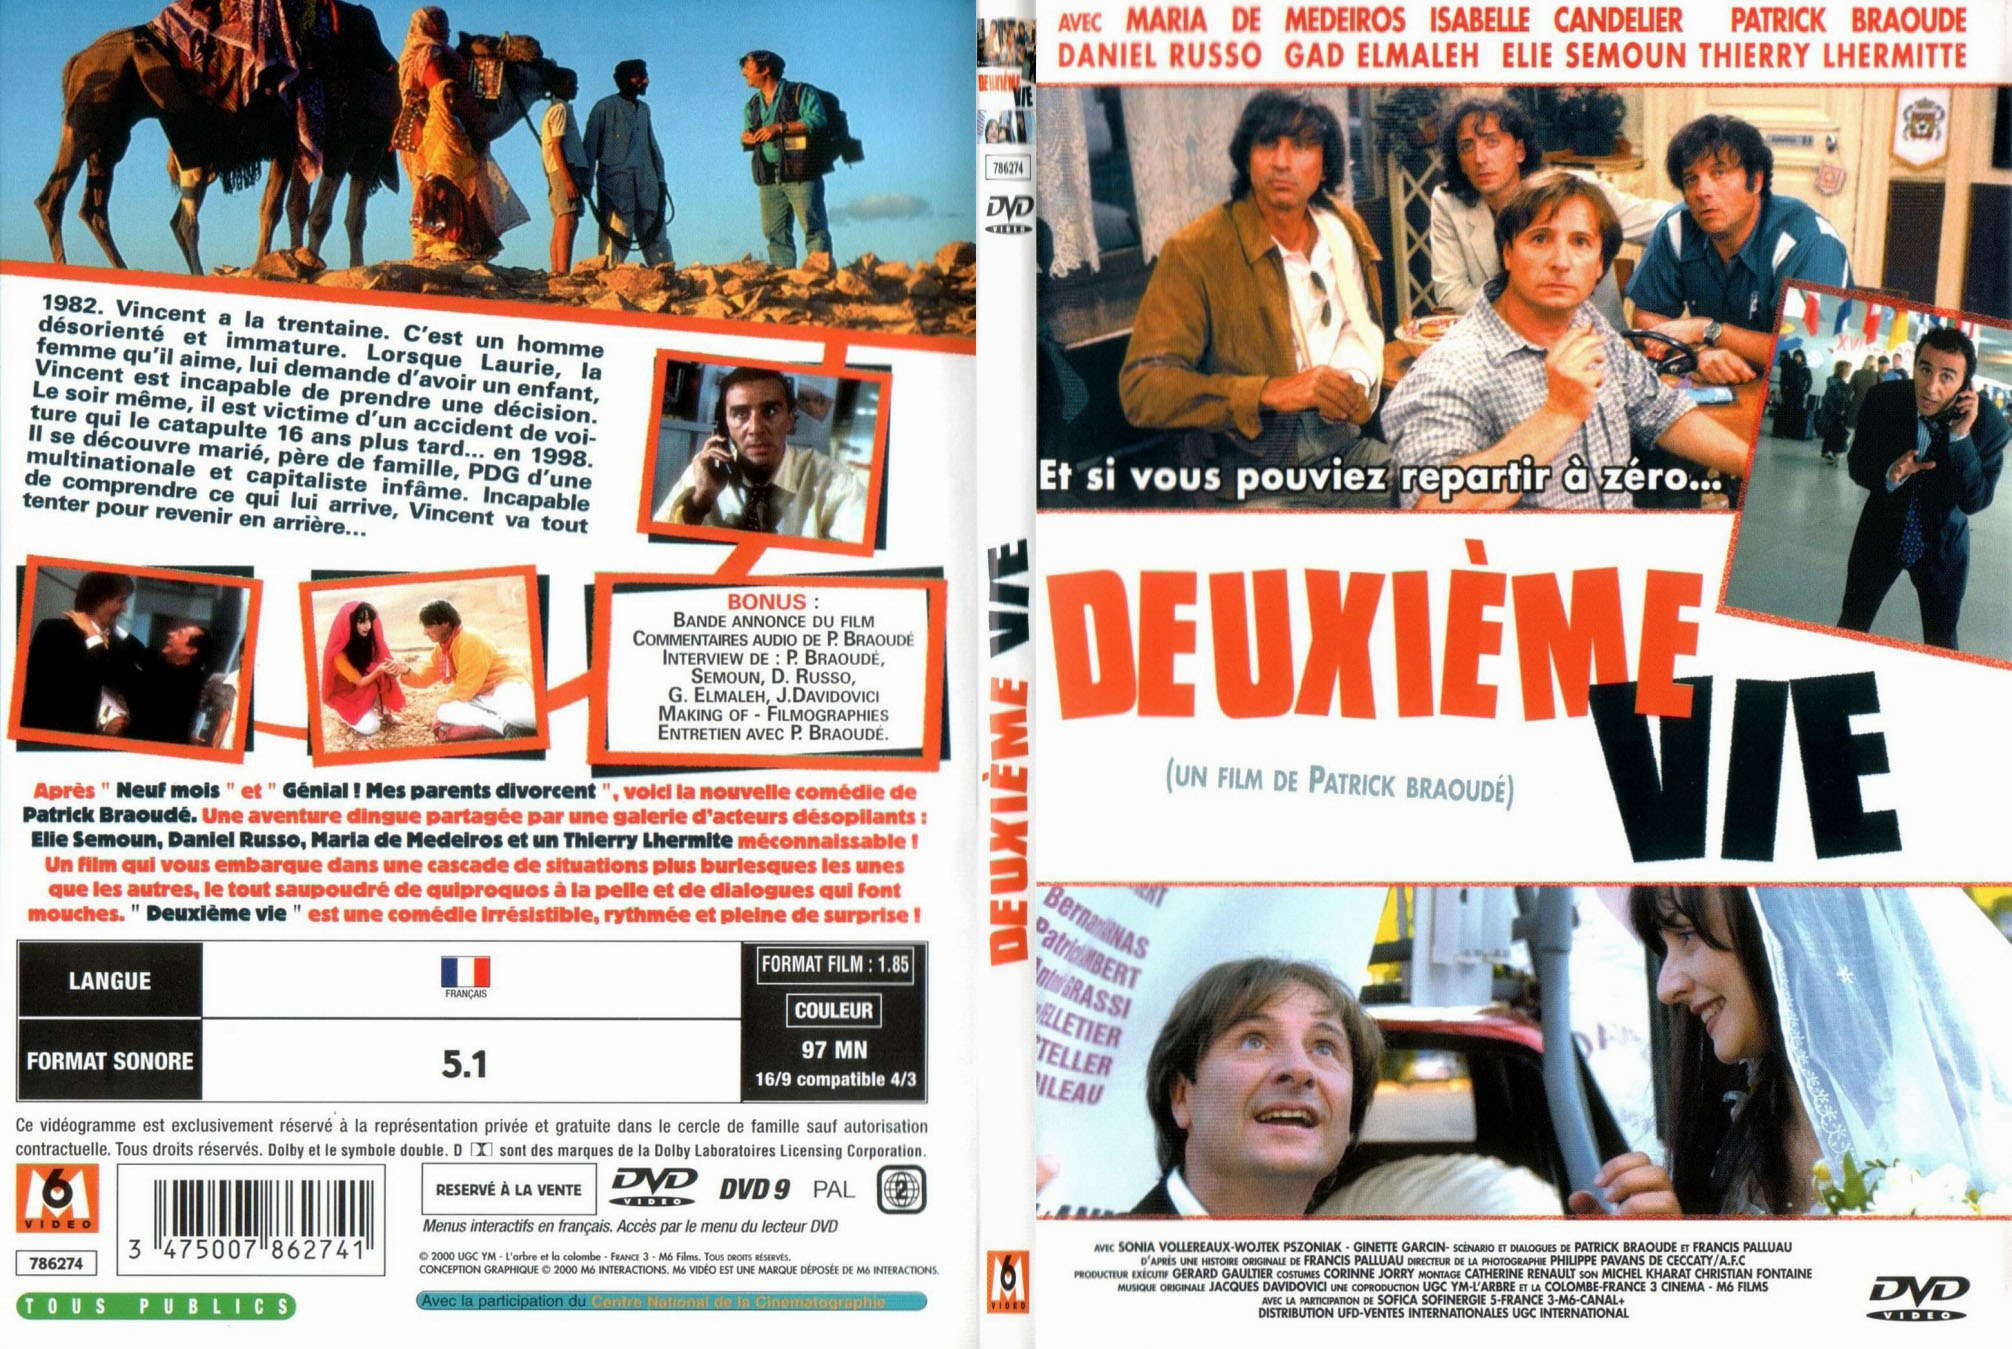 Jaquette DVD Deuxime vie - SLIM